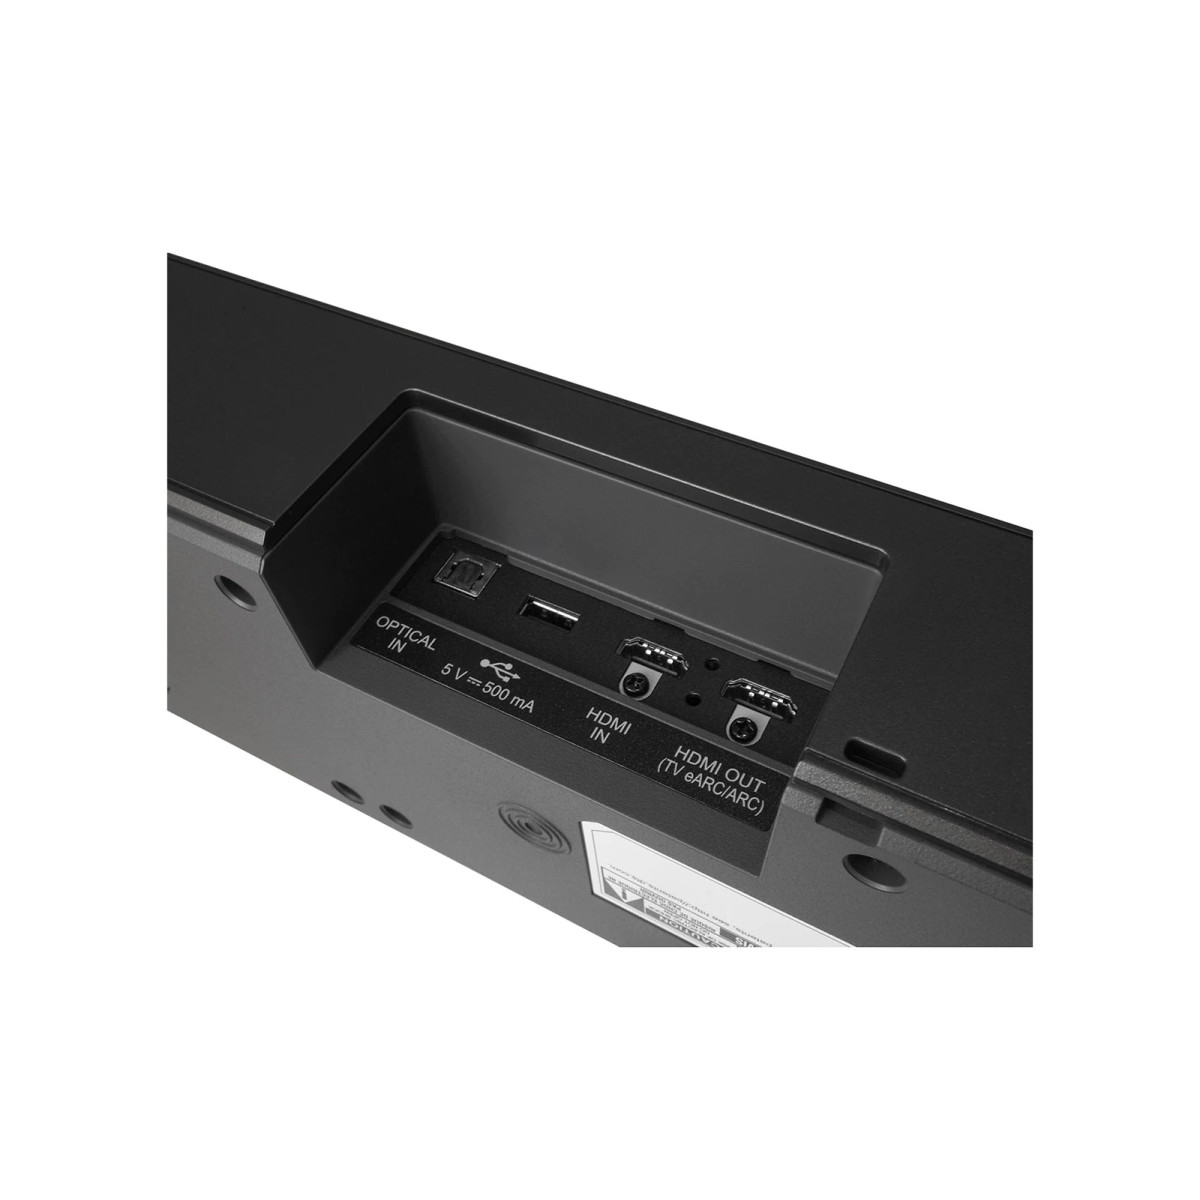 Ασύρματο LG S75Q Soundbar 380W 3.1.2 Subwoofer και Τηλεχειριστήριο Μαύρο Ήχος